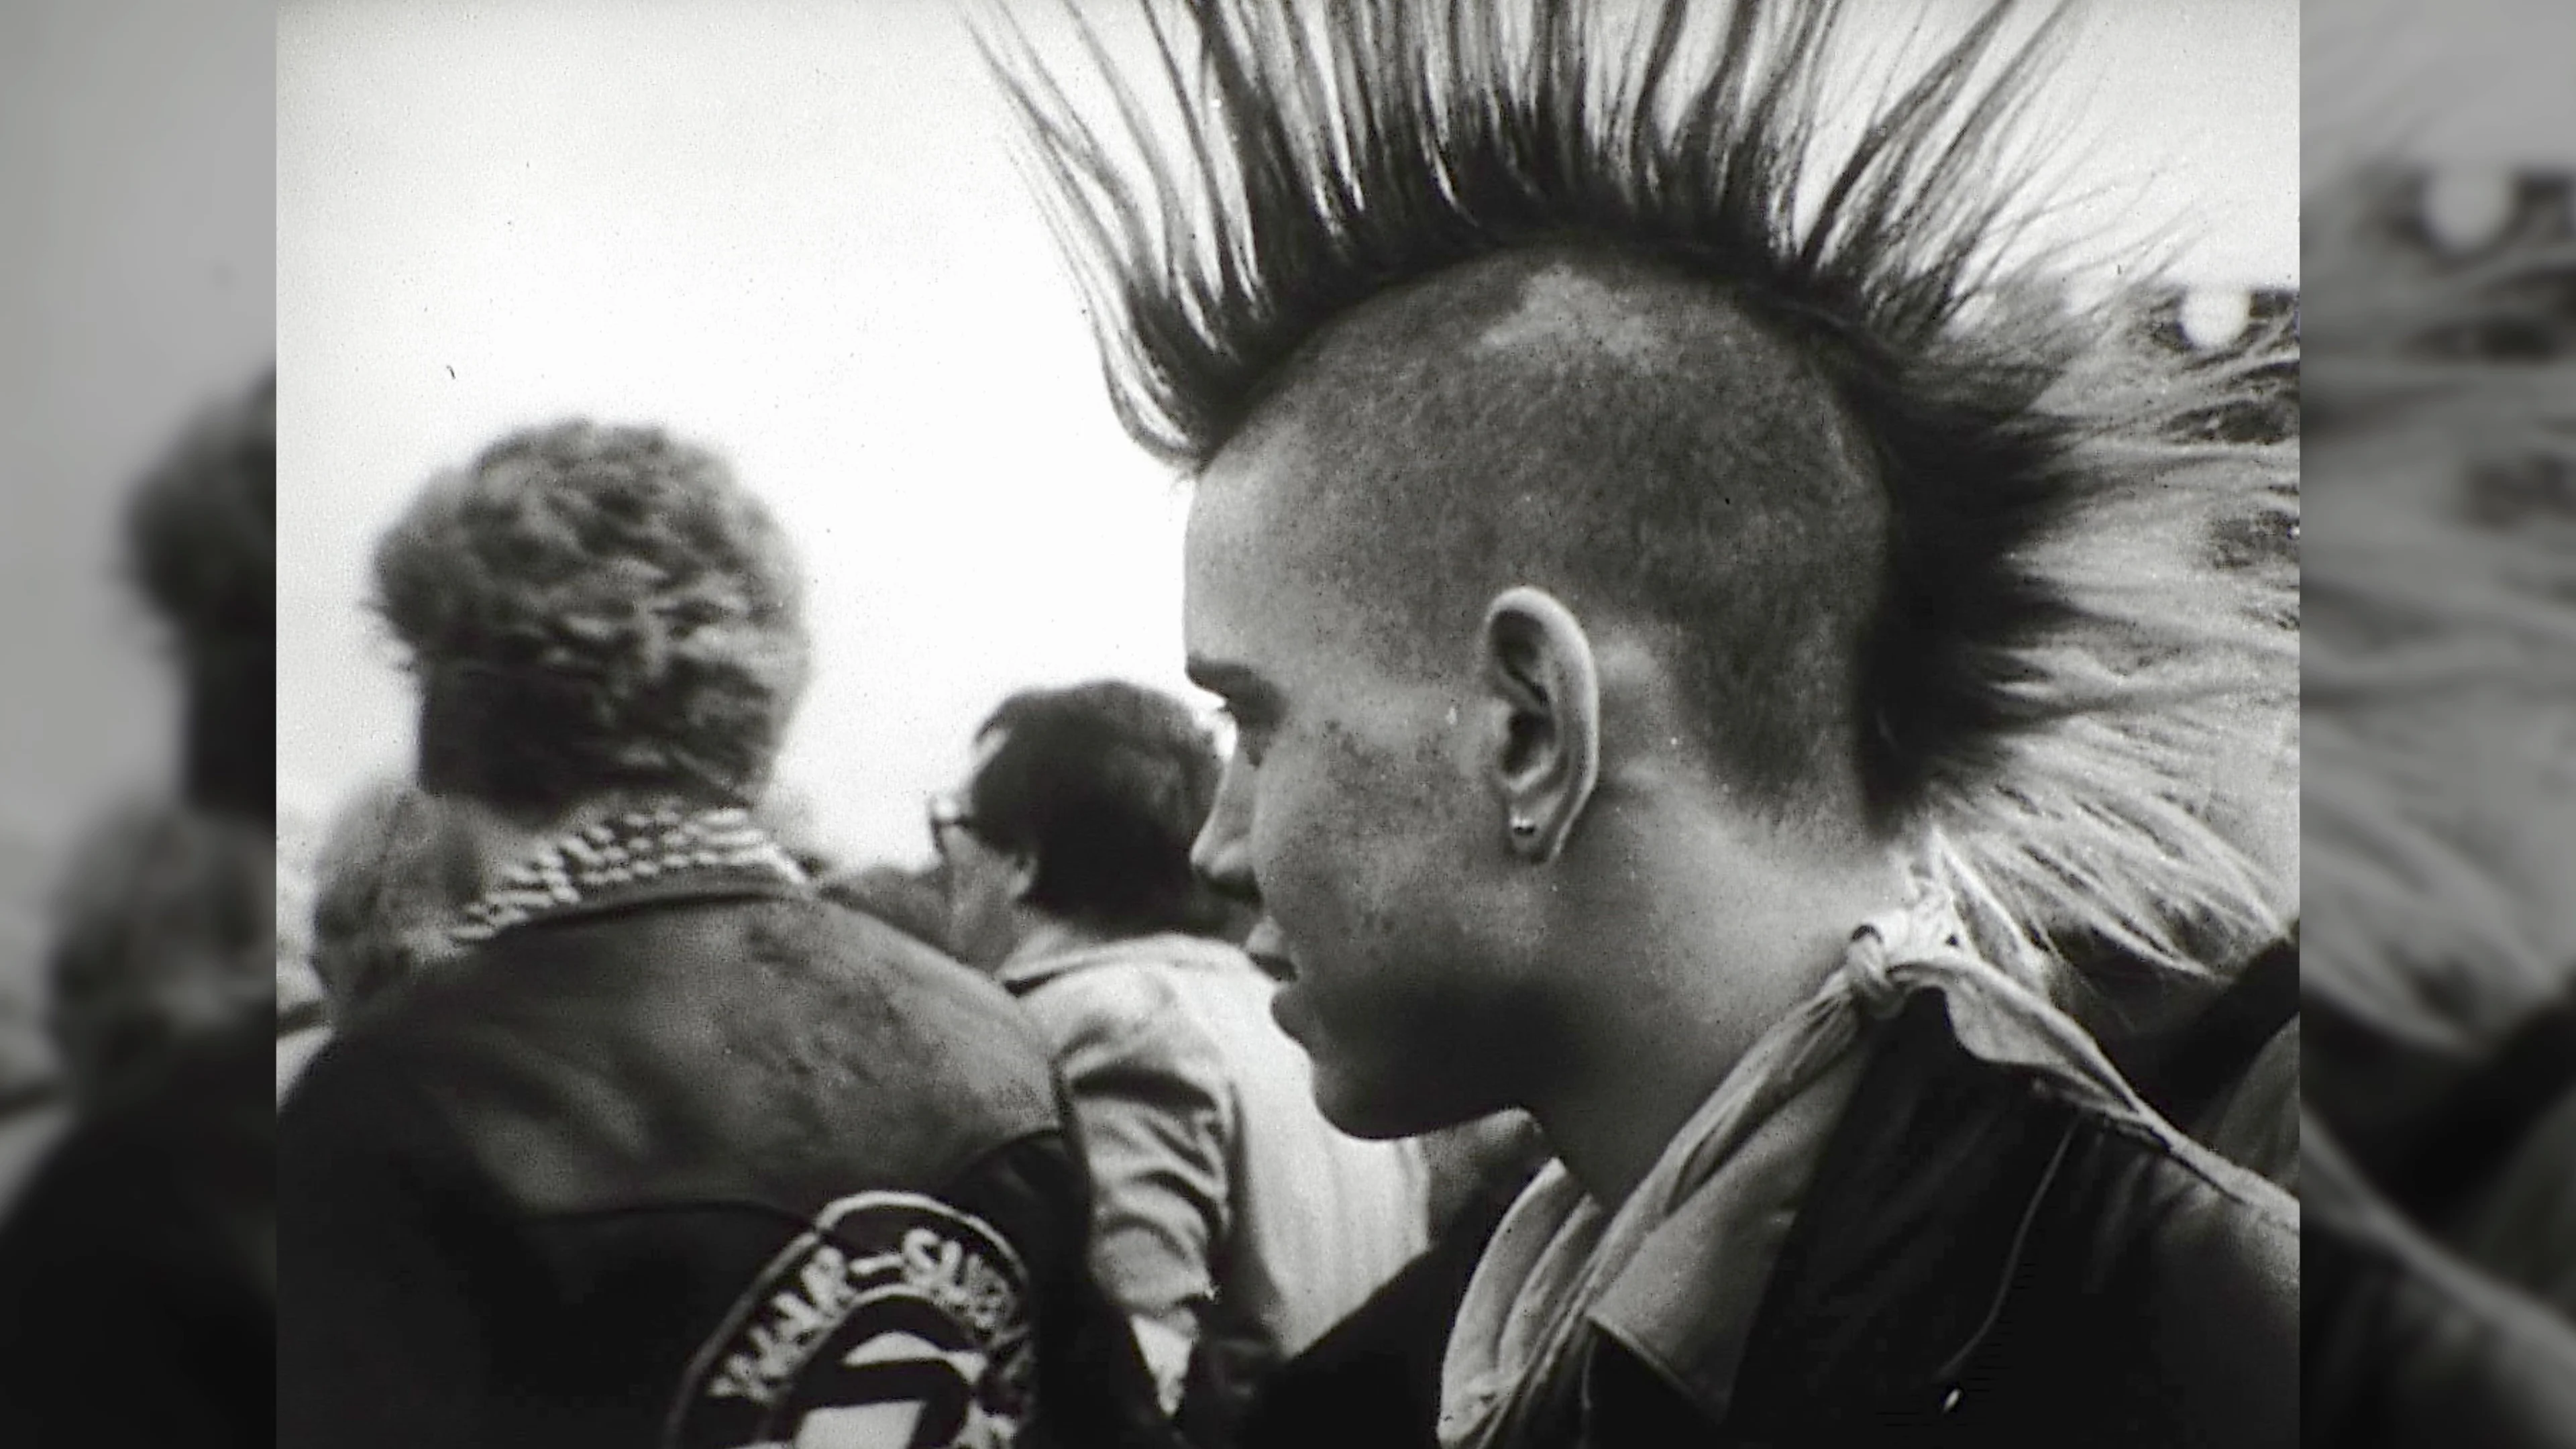 punk rock fashion 1970s